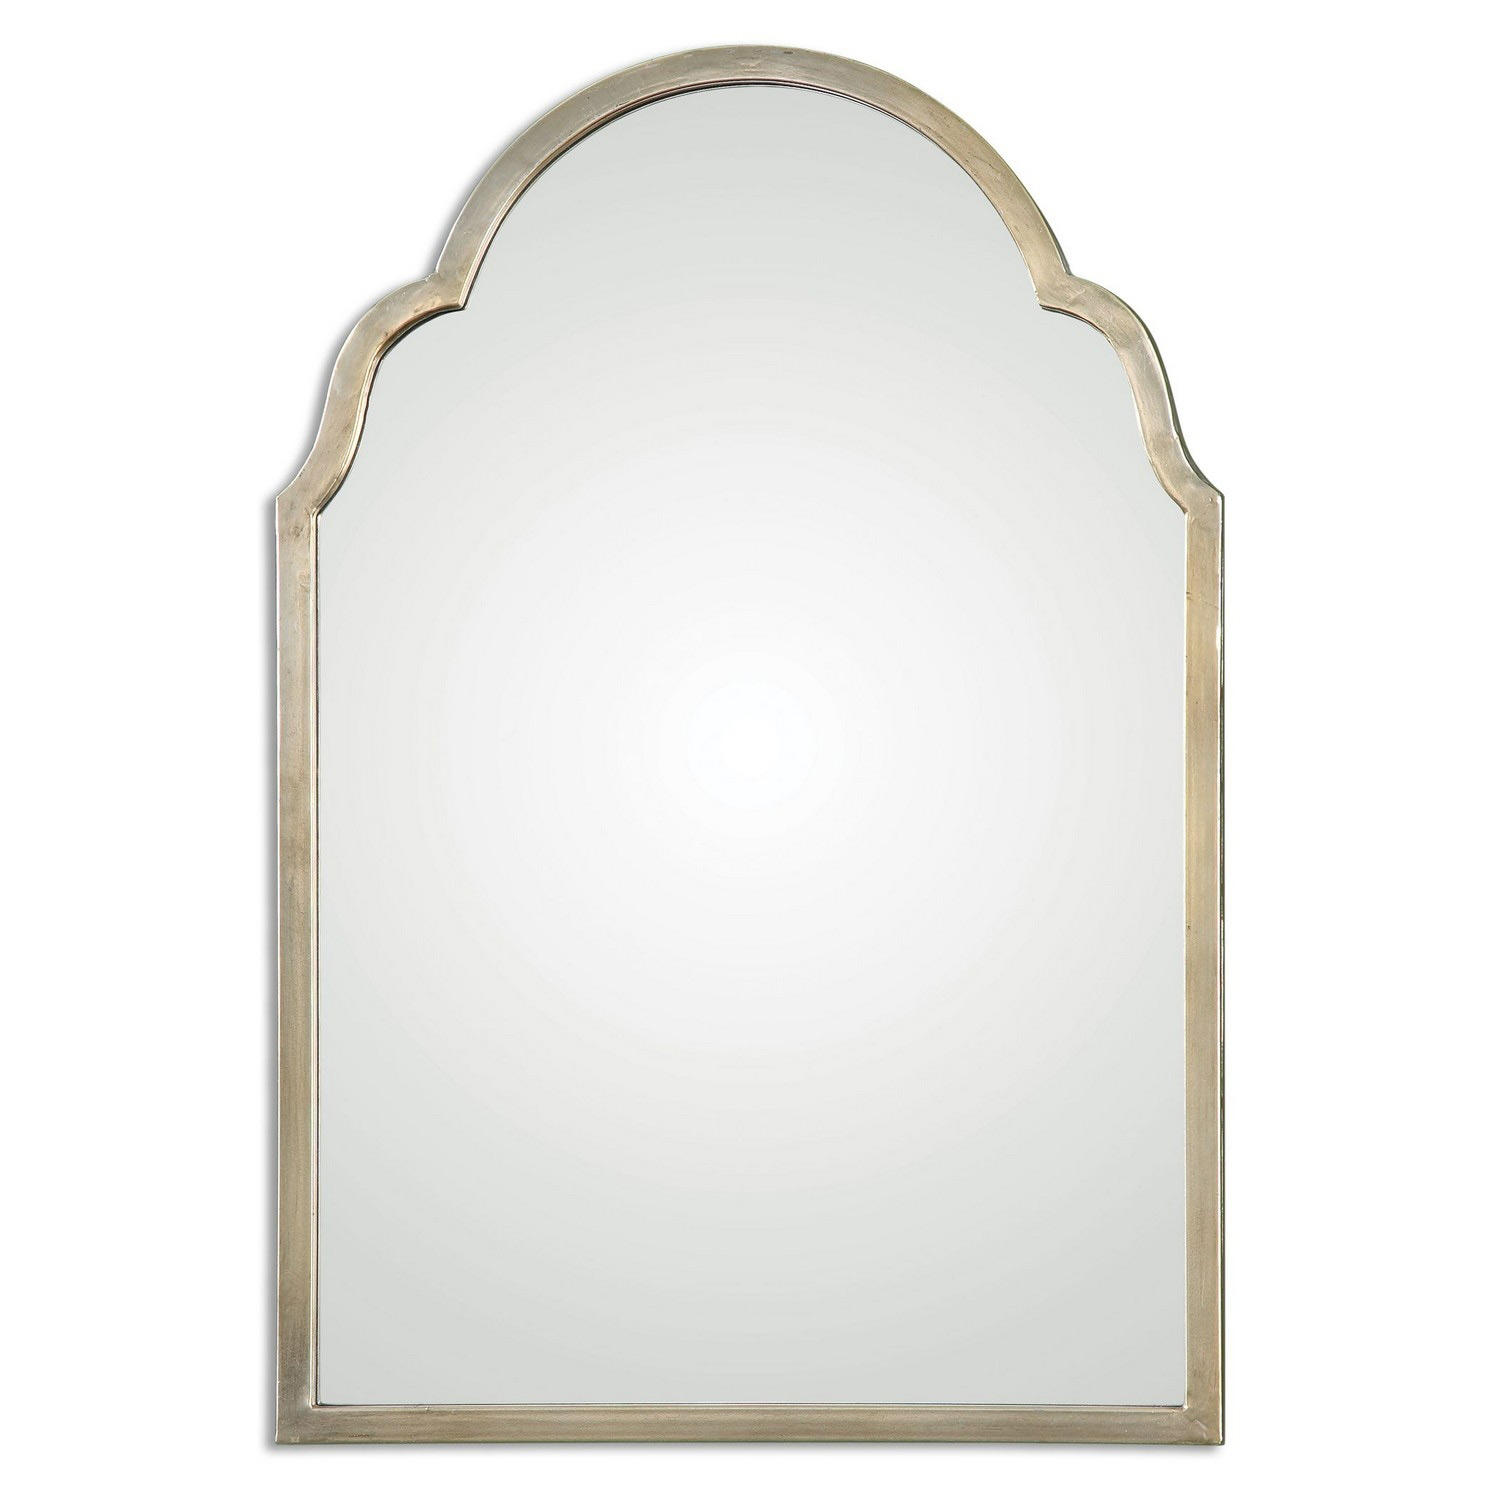 Uttermost Brayden Petite Arch Mirror - Silver